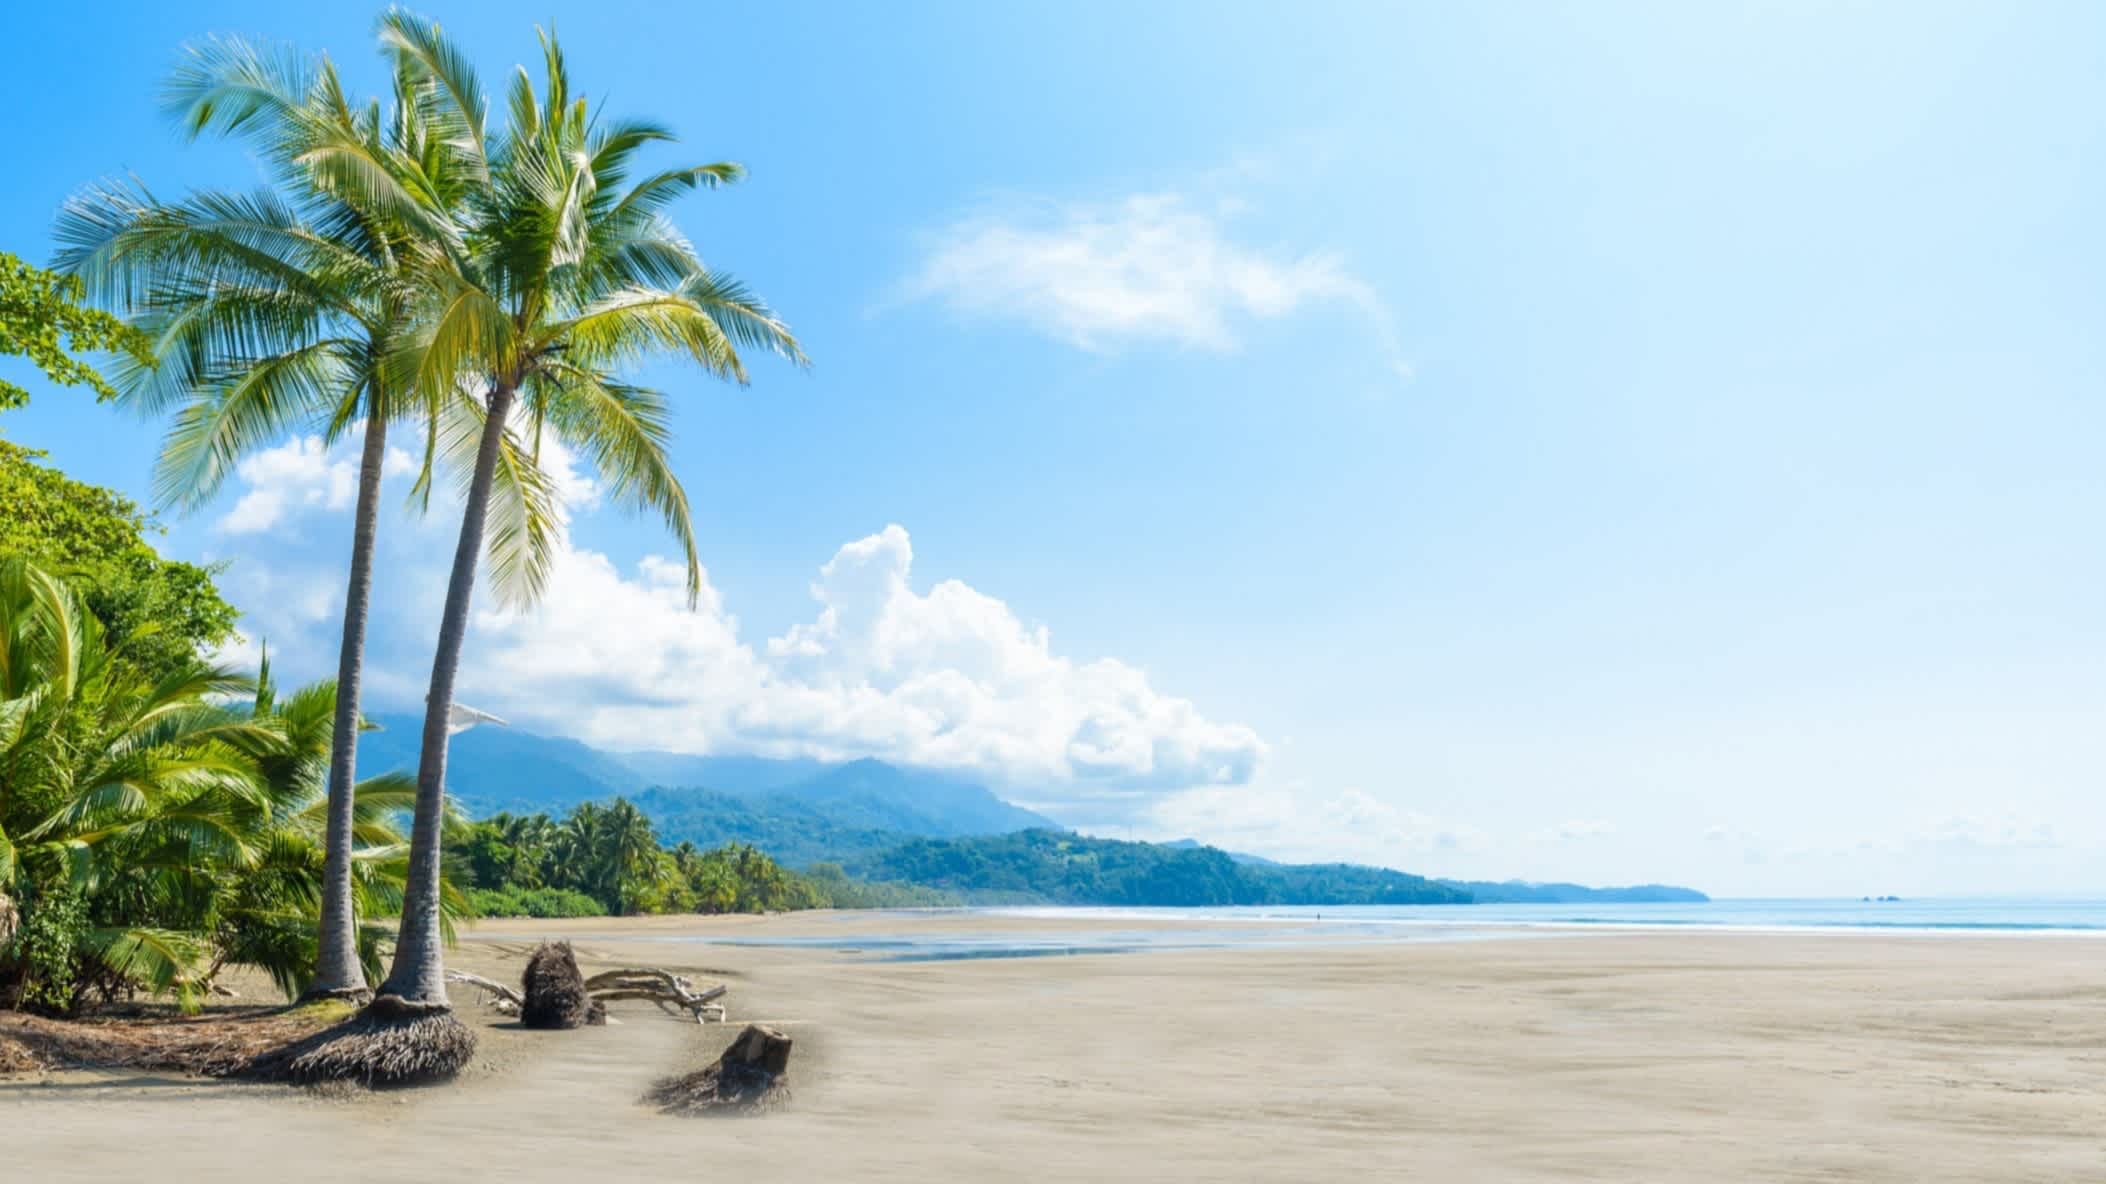 Tropischer Strand bei Ebbe in Uvita im Marino-Ballena-Nationalpark in Costa Rica bei purem Sonnenschein und mit Palmen im Bild sowie einem Gebirge im Hintergrund.